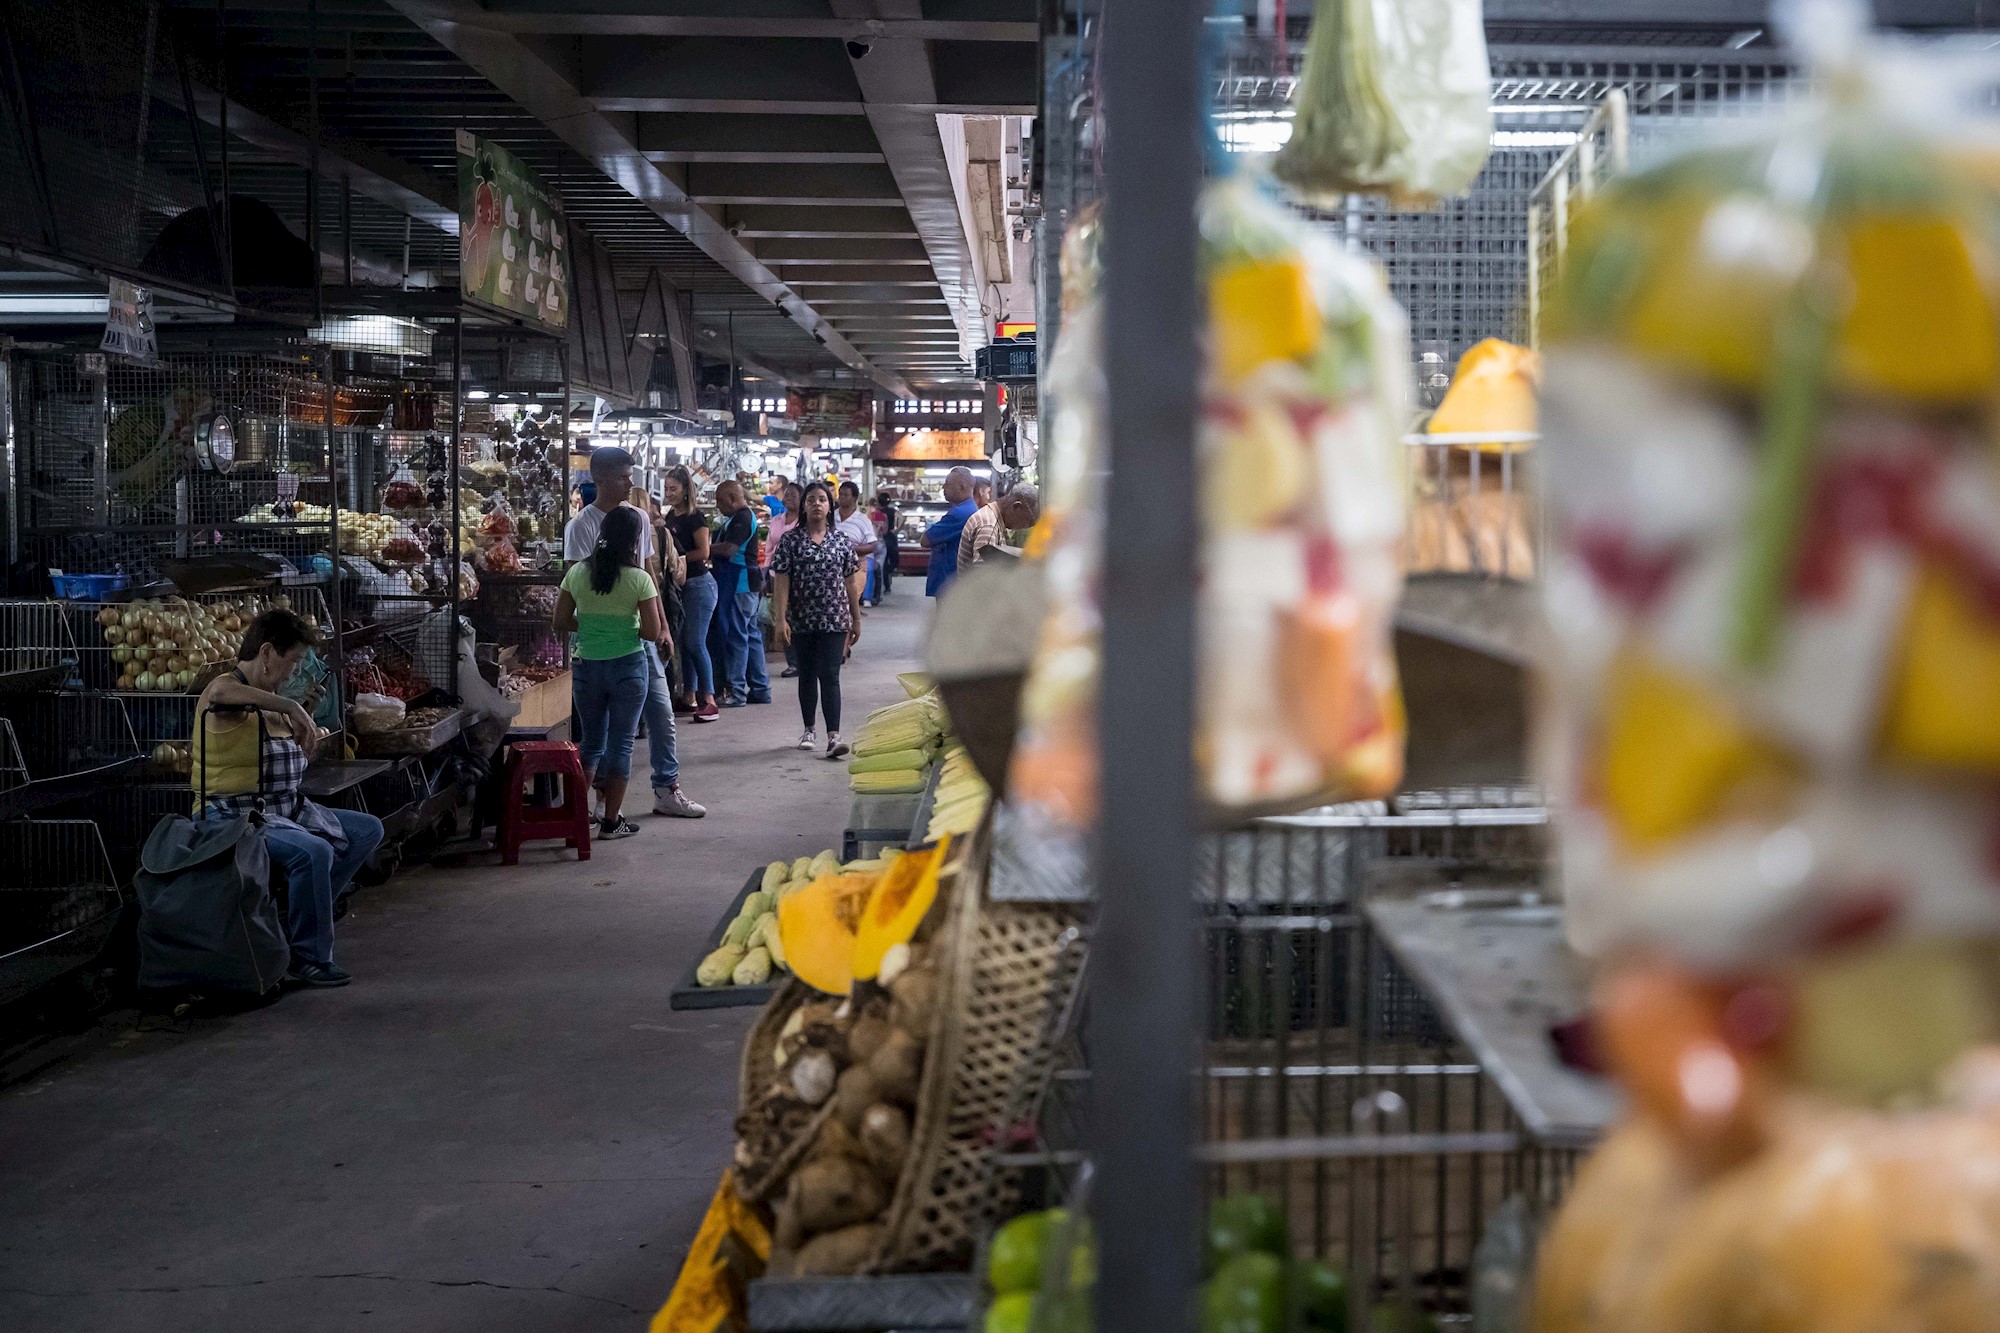 Precios de alimentos en Venezuela se elevaron en un 44% en el último trimestre del año